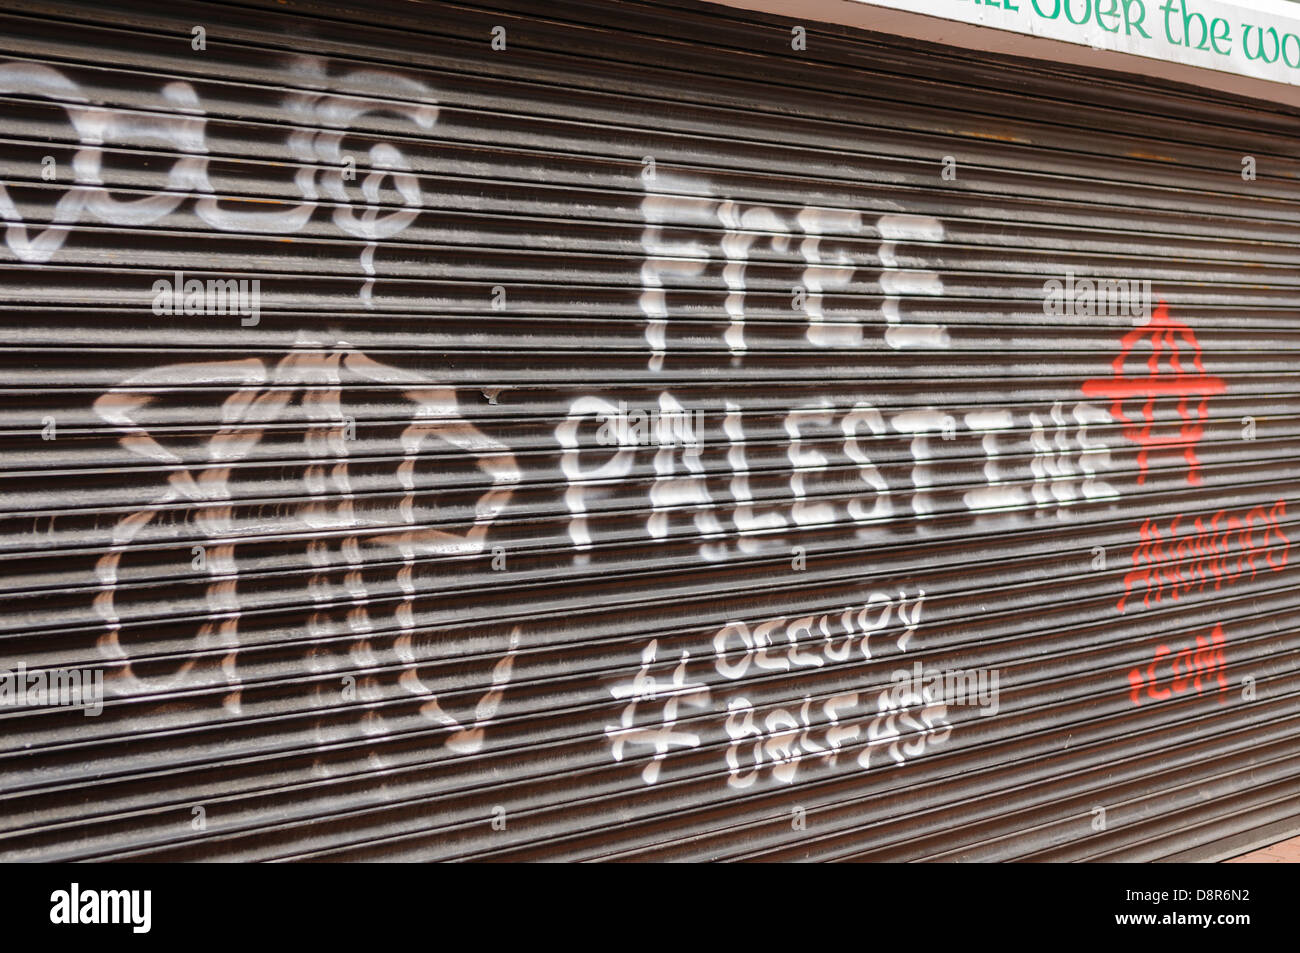 Graffiti sur un magasin 'obturateur # Palestine libre occuper belfast' Banque D'Images